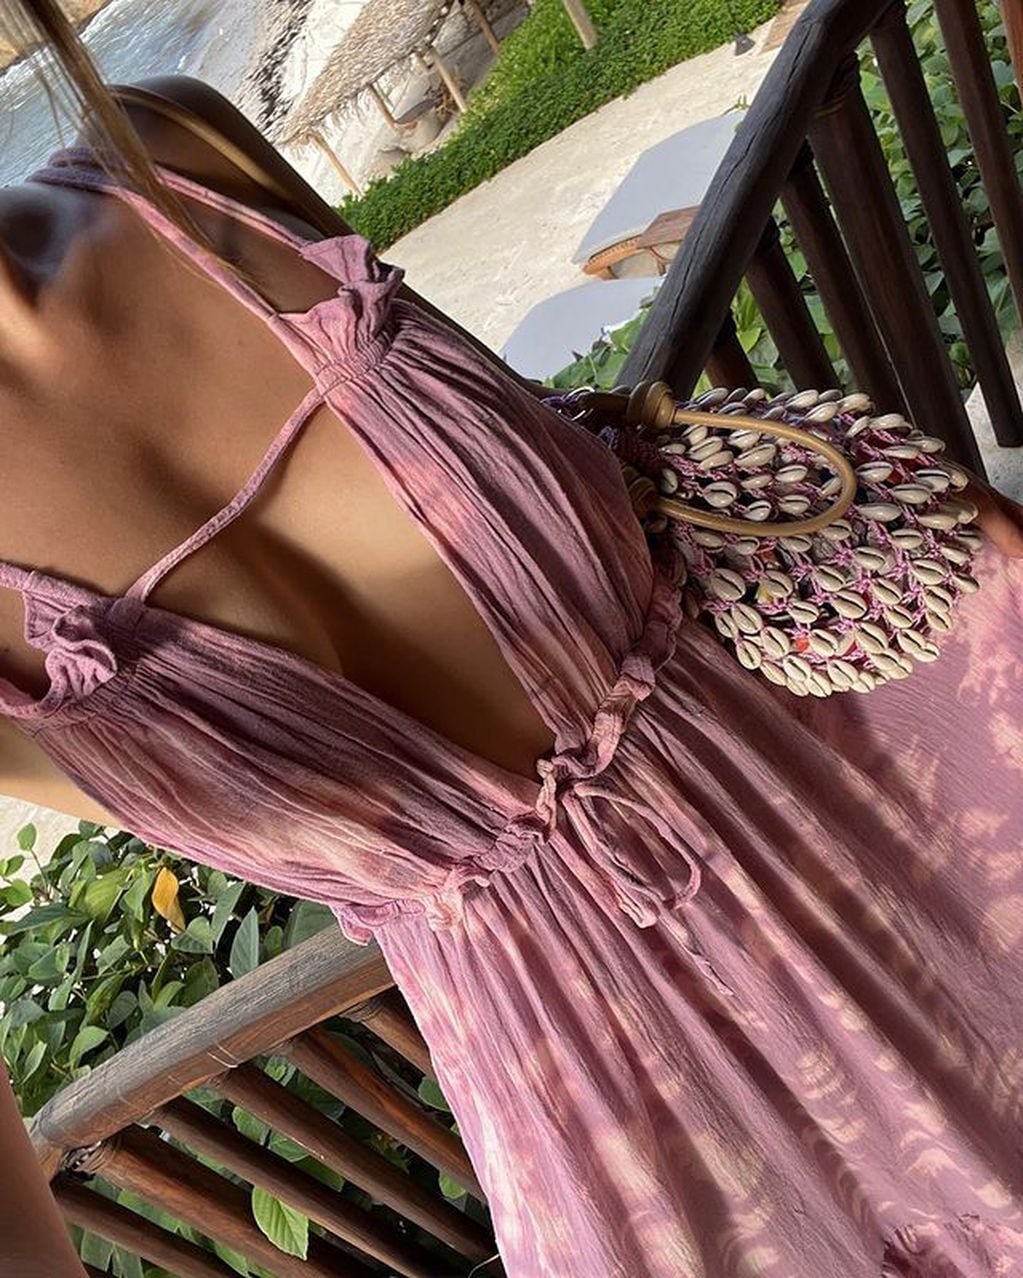 La hija de Luis Miguel posó con un imponente vestido drapeado ante la cámara / Foto: Instagram